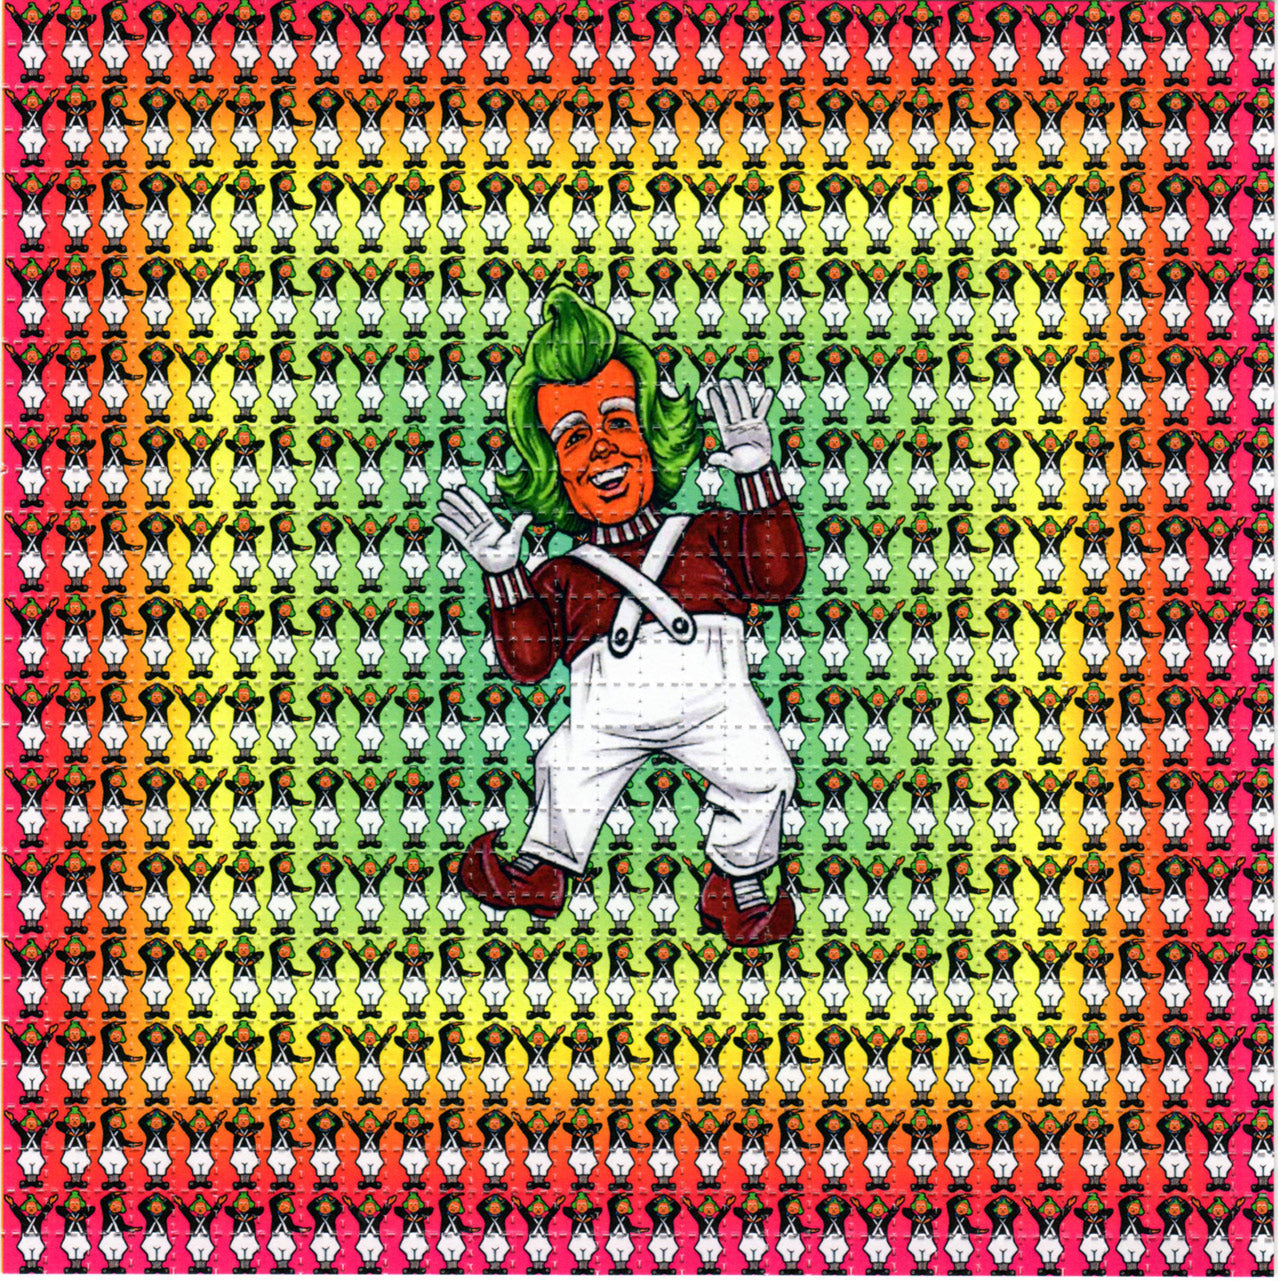 0ompahs LSD blotter art print